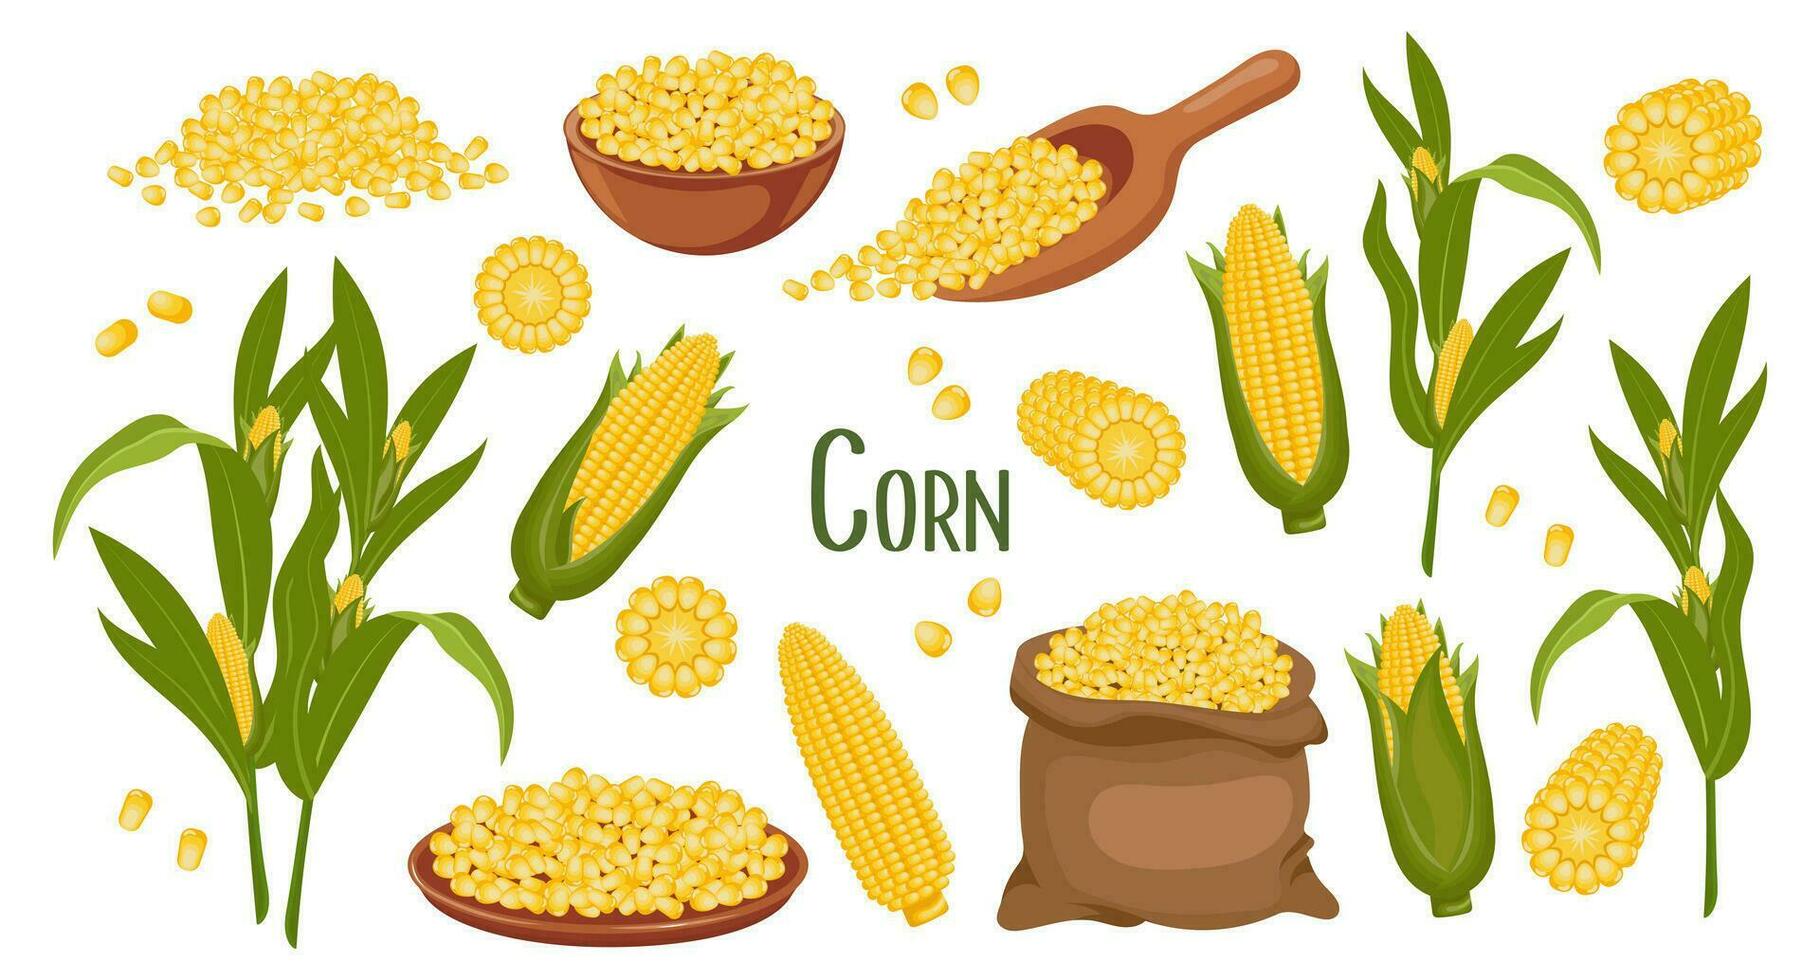 uppsättning av majs korn och spikelets. majs växt, ljuv majs, majs kolvar, majs korn i en tallrik, sked och väska. lantbruk, mat ikoner, vektor